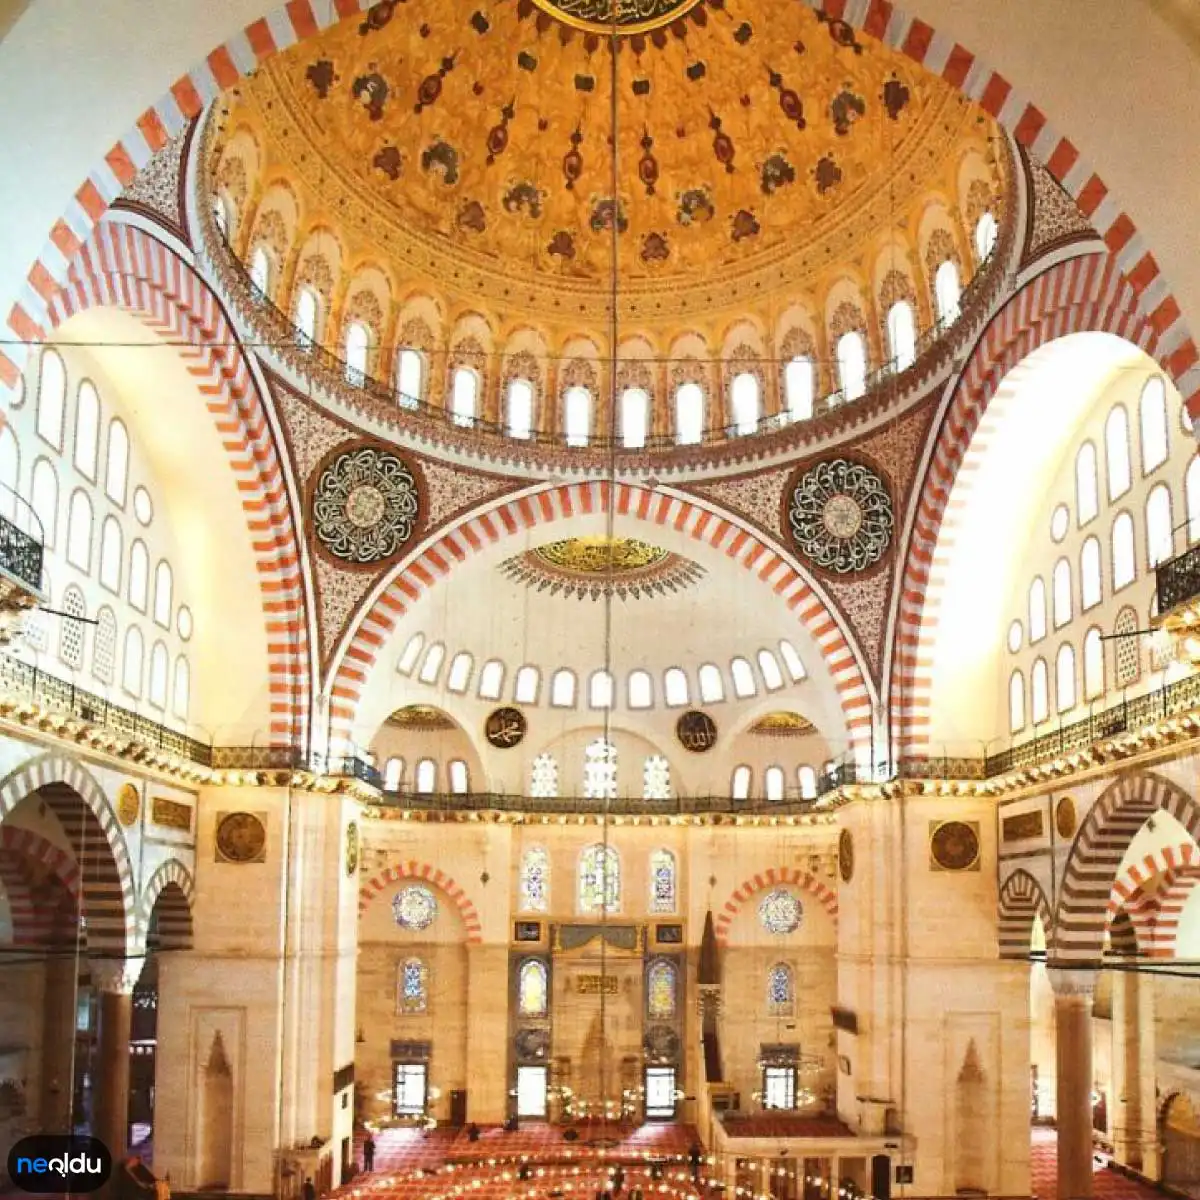 Süleymaniye Camii Hakkında Bilgi